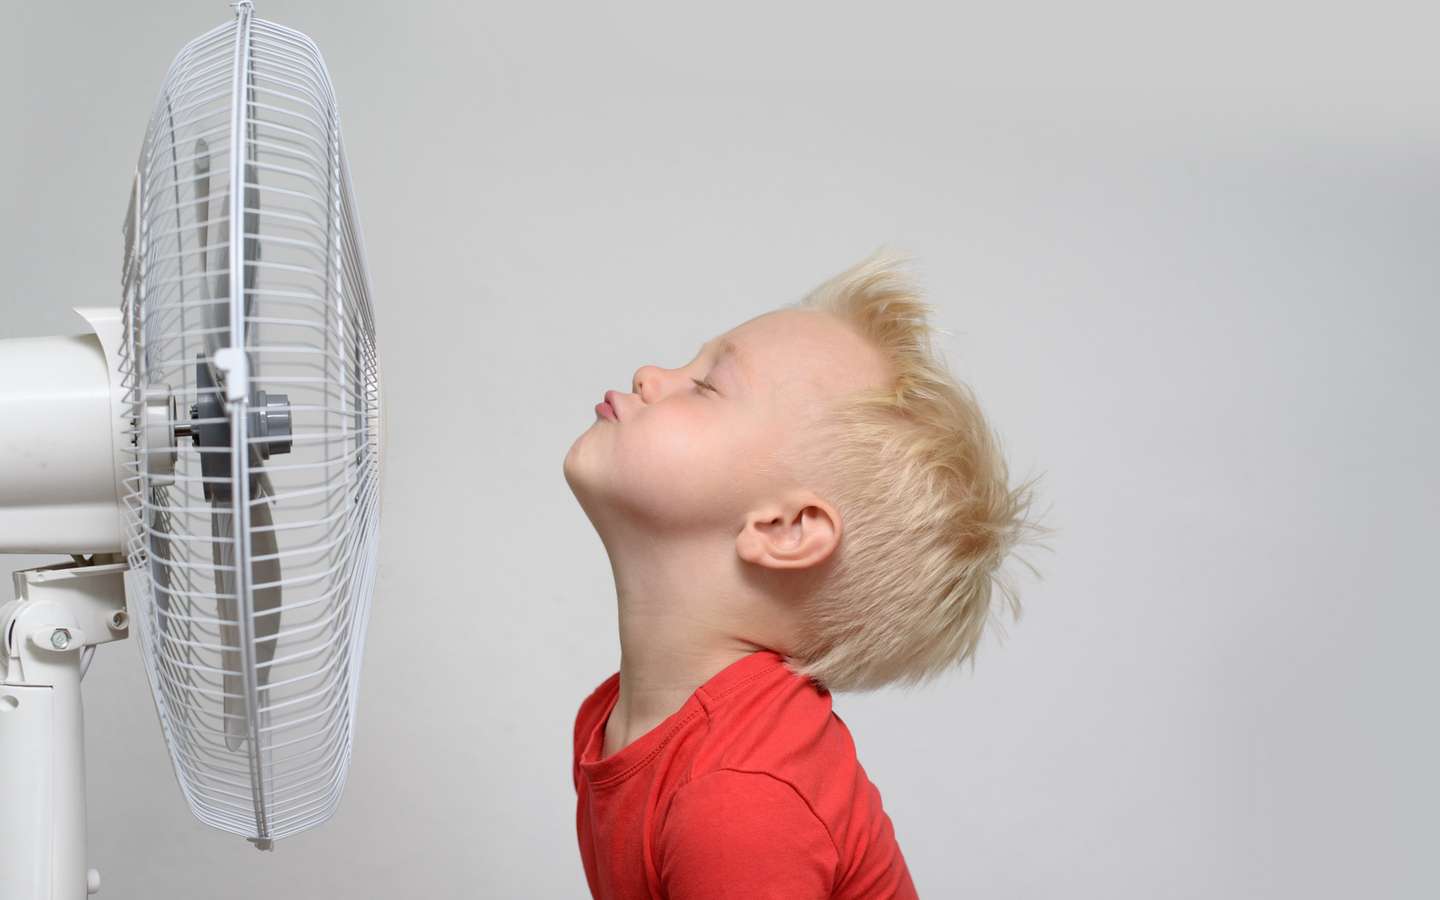 Chaleur : les meilleurs ventilateurs et purificateurs d'airs